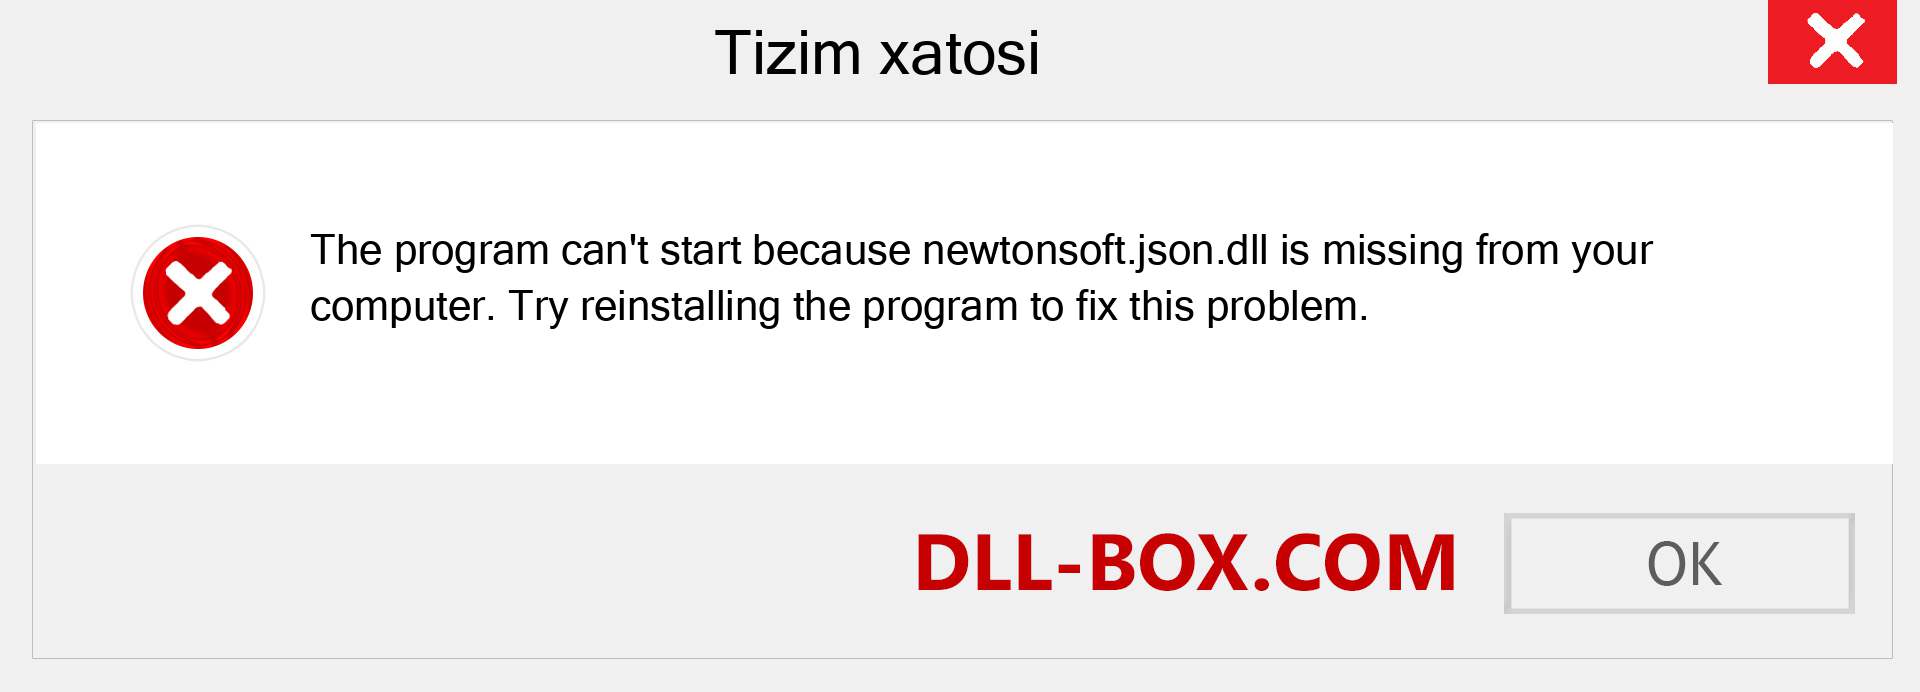 newtonsoft.json.dll fayli yo'qolganmi?. Windows 7, 8, 10 uchun yuklab olish - Windowsda newtonsoft.json dll etishmayotgan xatoni tuzating, rasmlar, rasmlar